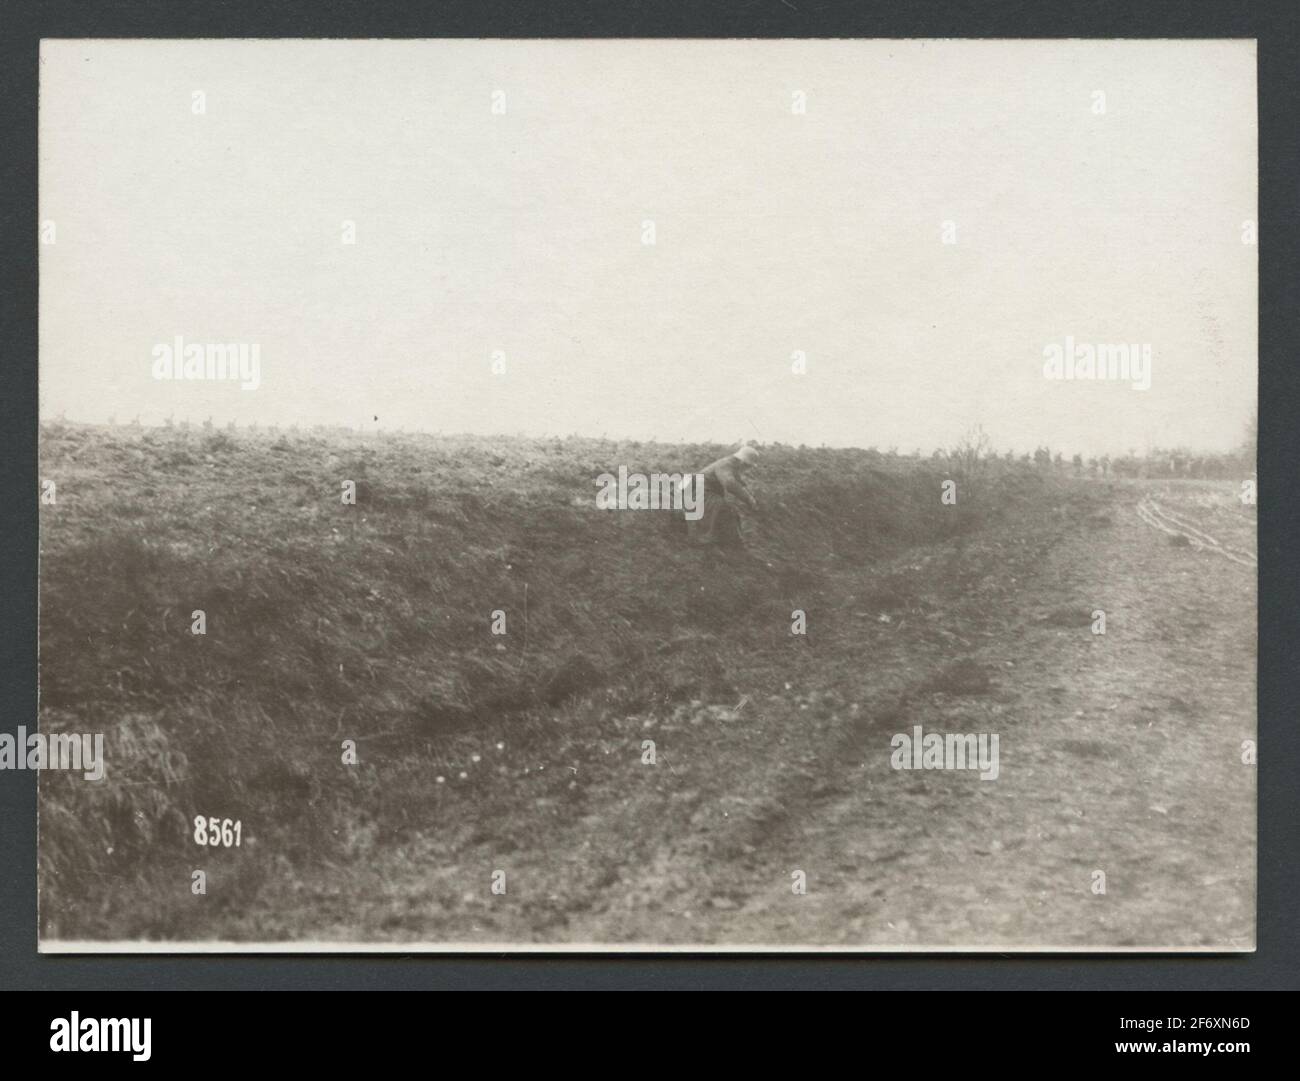 Soldato solitario immagini e fotografie stock ad alta risoluzione - Alamy